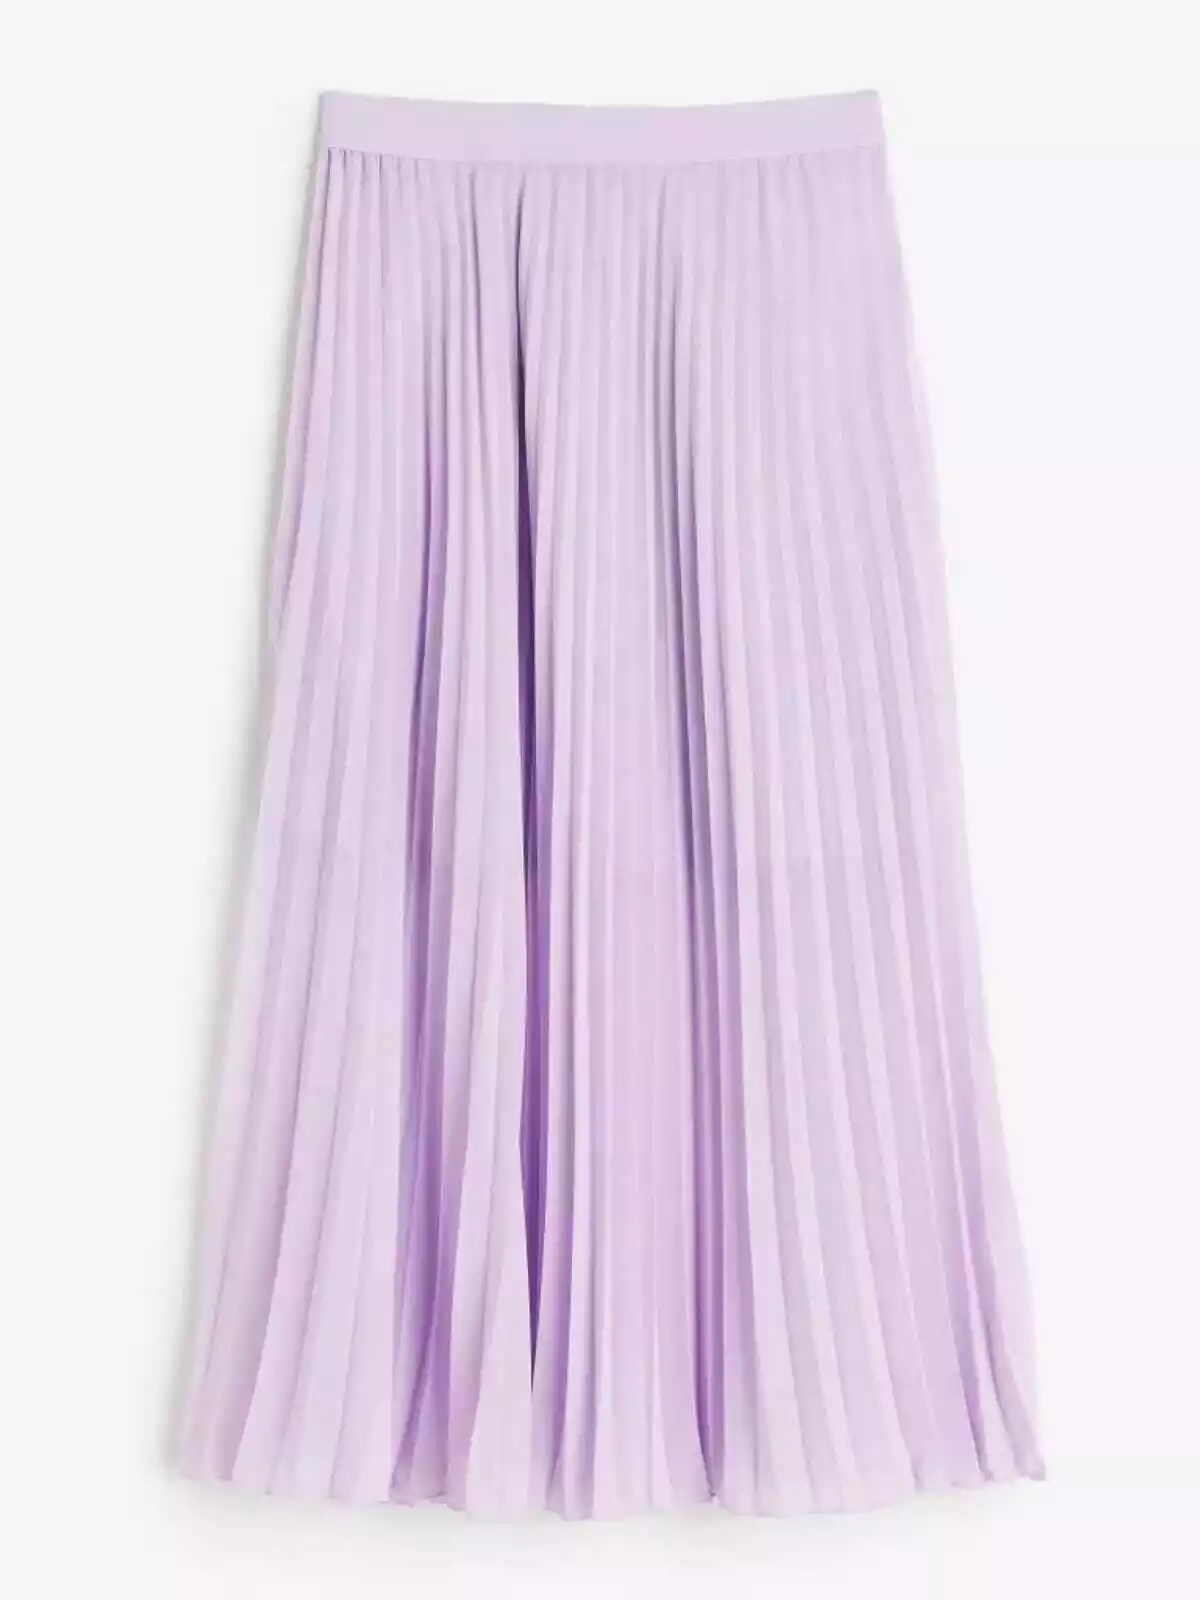 Transitorio Trueno Hazme La falda de H&M que parece de cuento y ahora han rebajado 15 €: causa furor